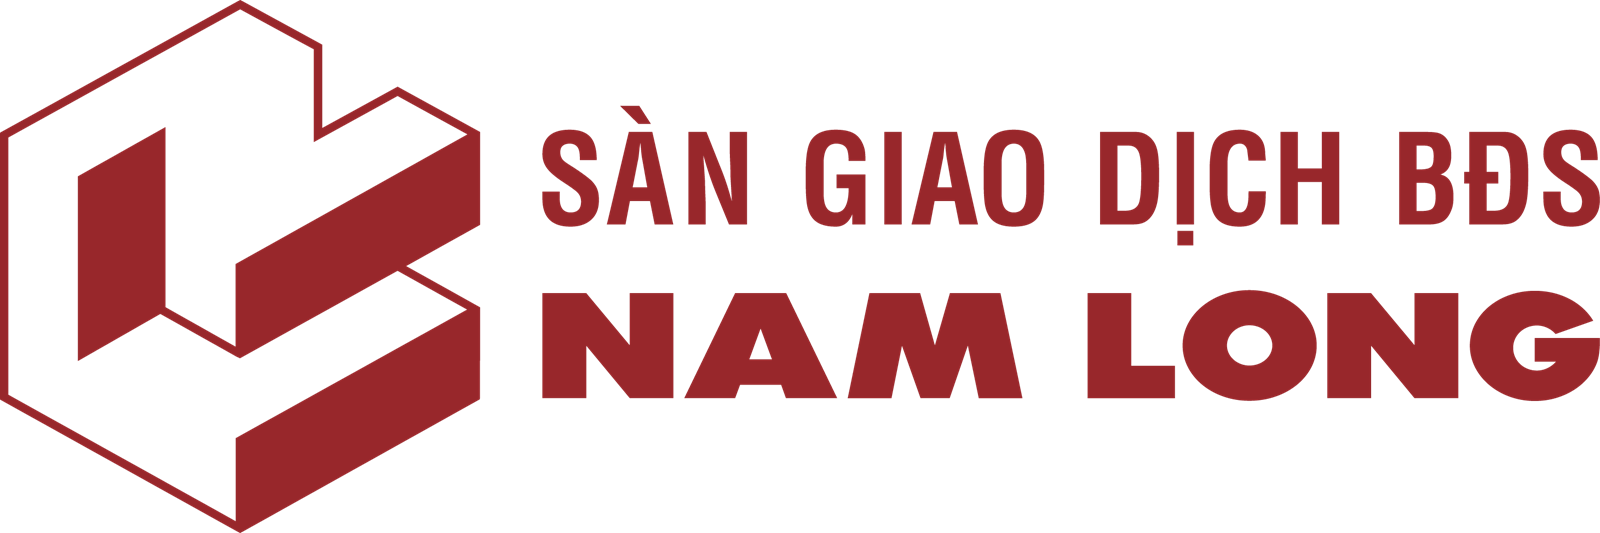 Sàn Nam Long